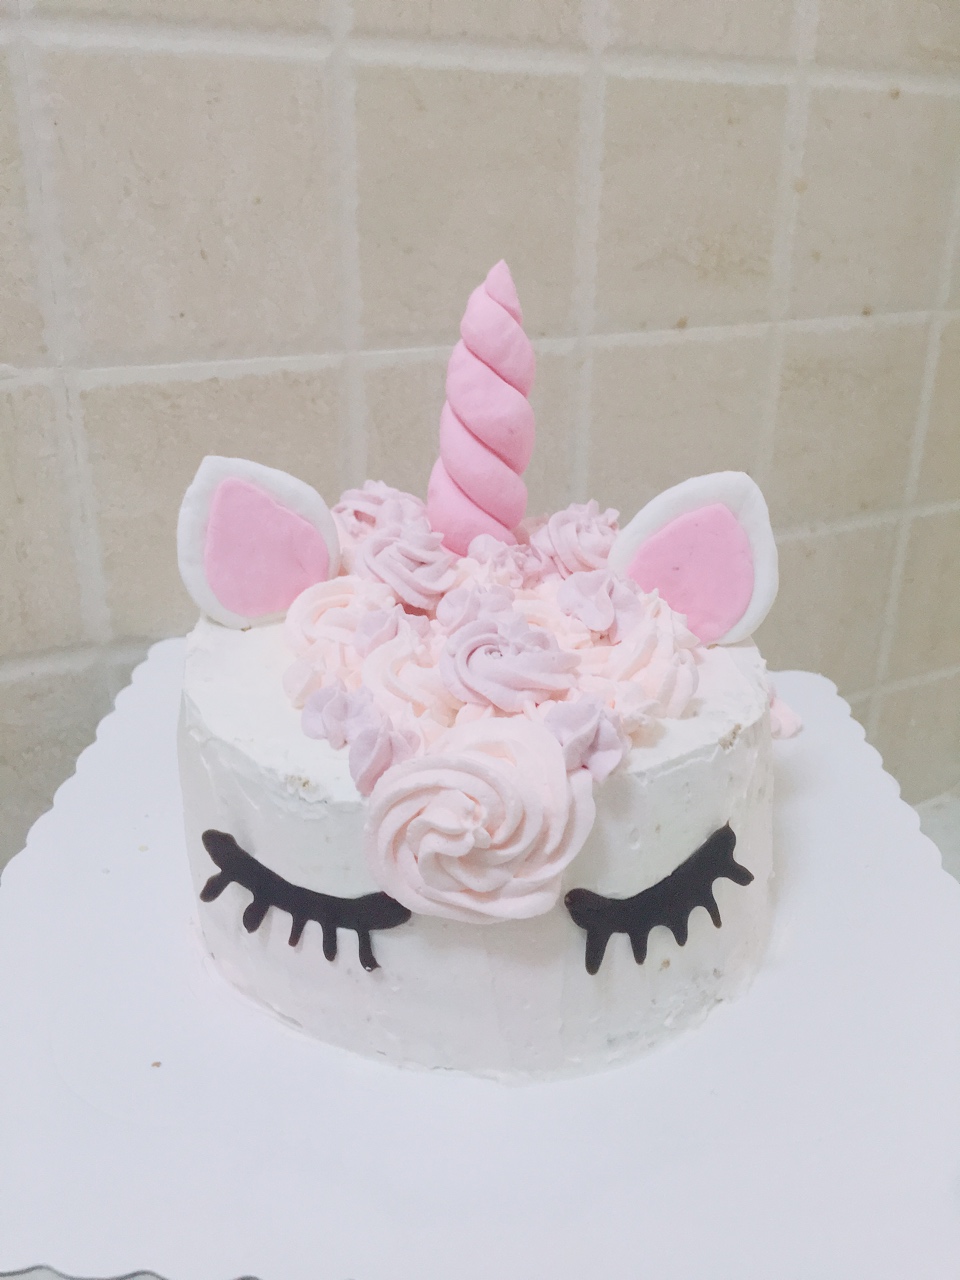 独角兽蛋糕视频 Unicorn cake